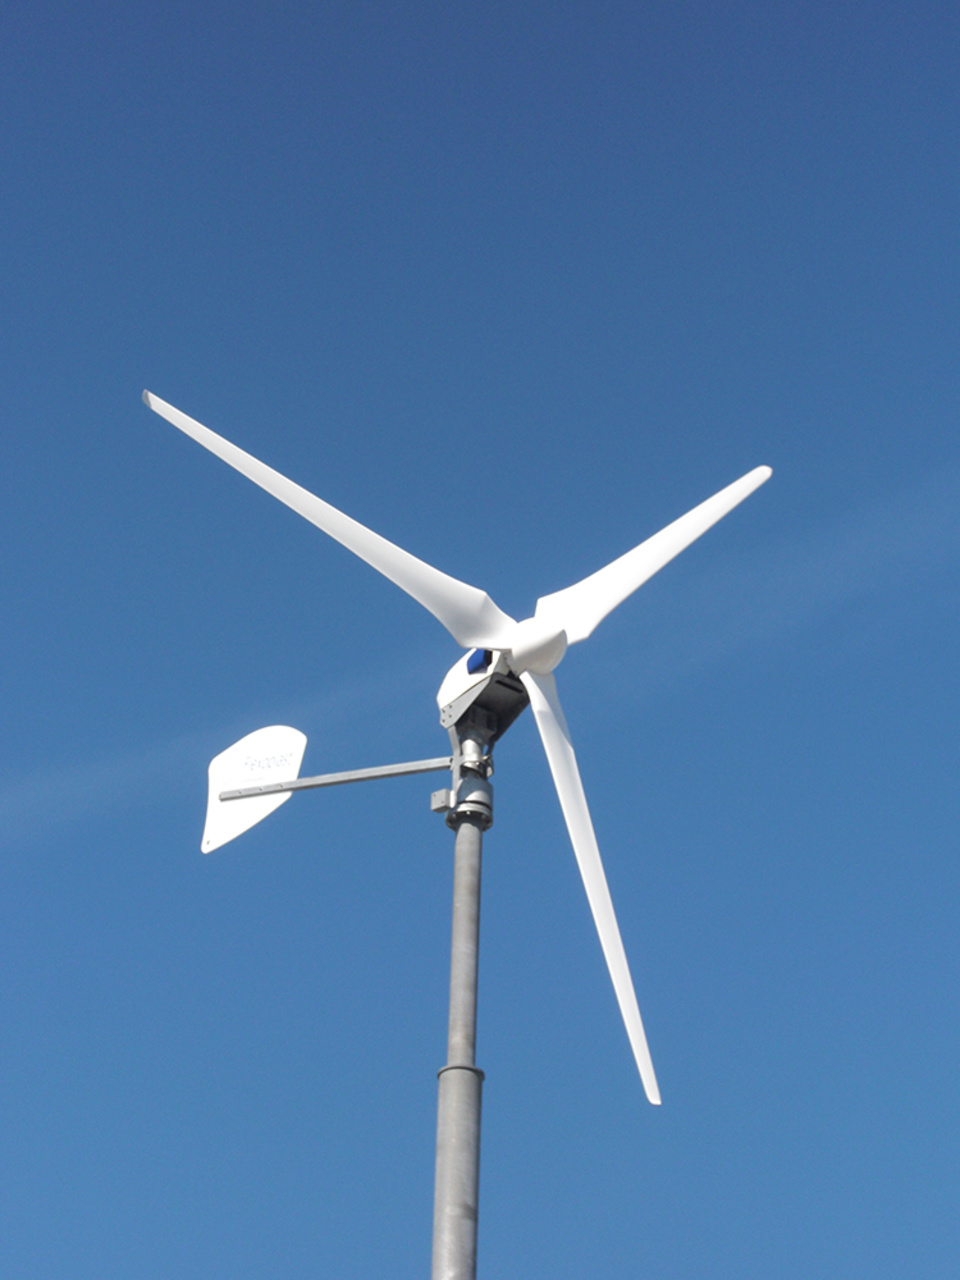 Windkraft2 bei Elektrotechnik Thomas Reu in Nürnberg